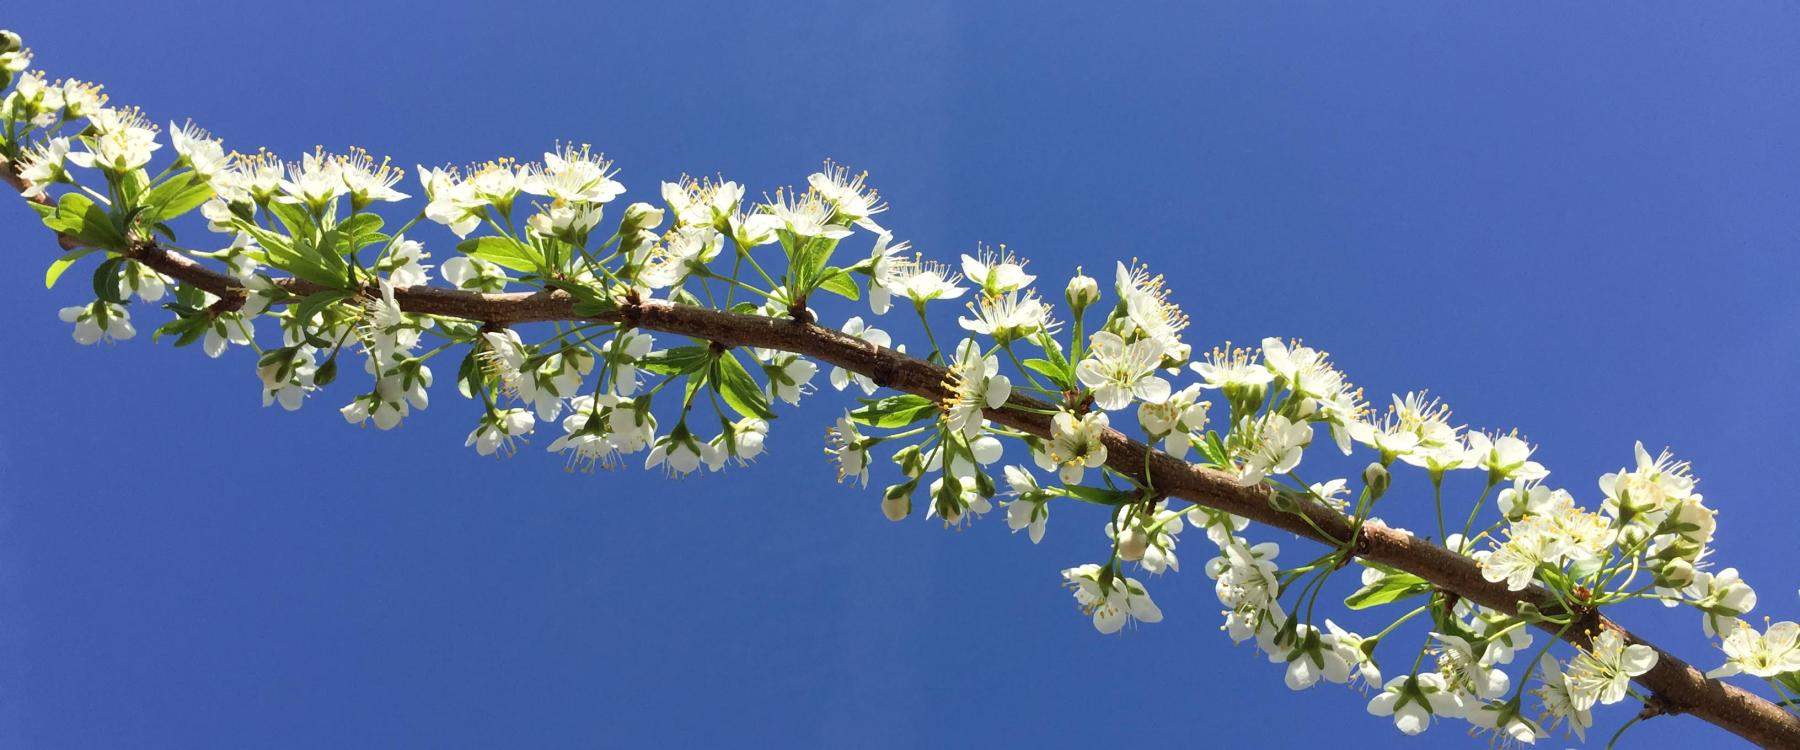 Crabapples in flower against blue sky